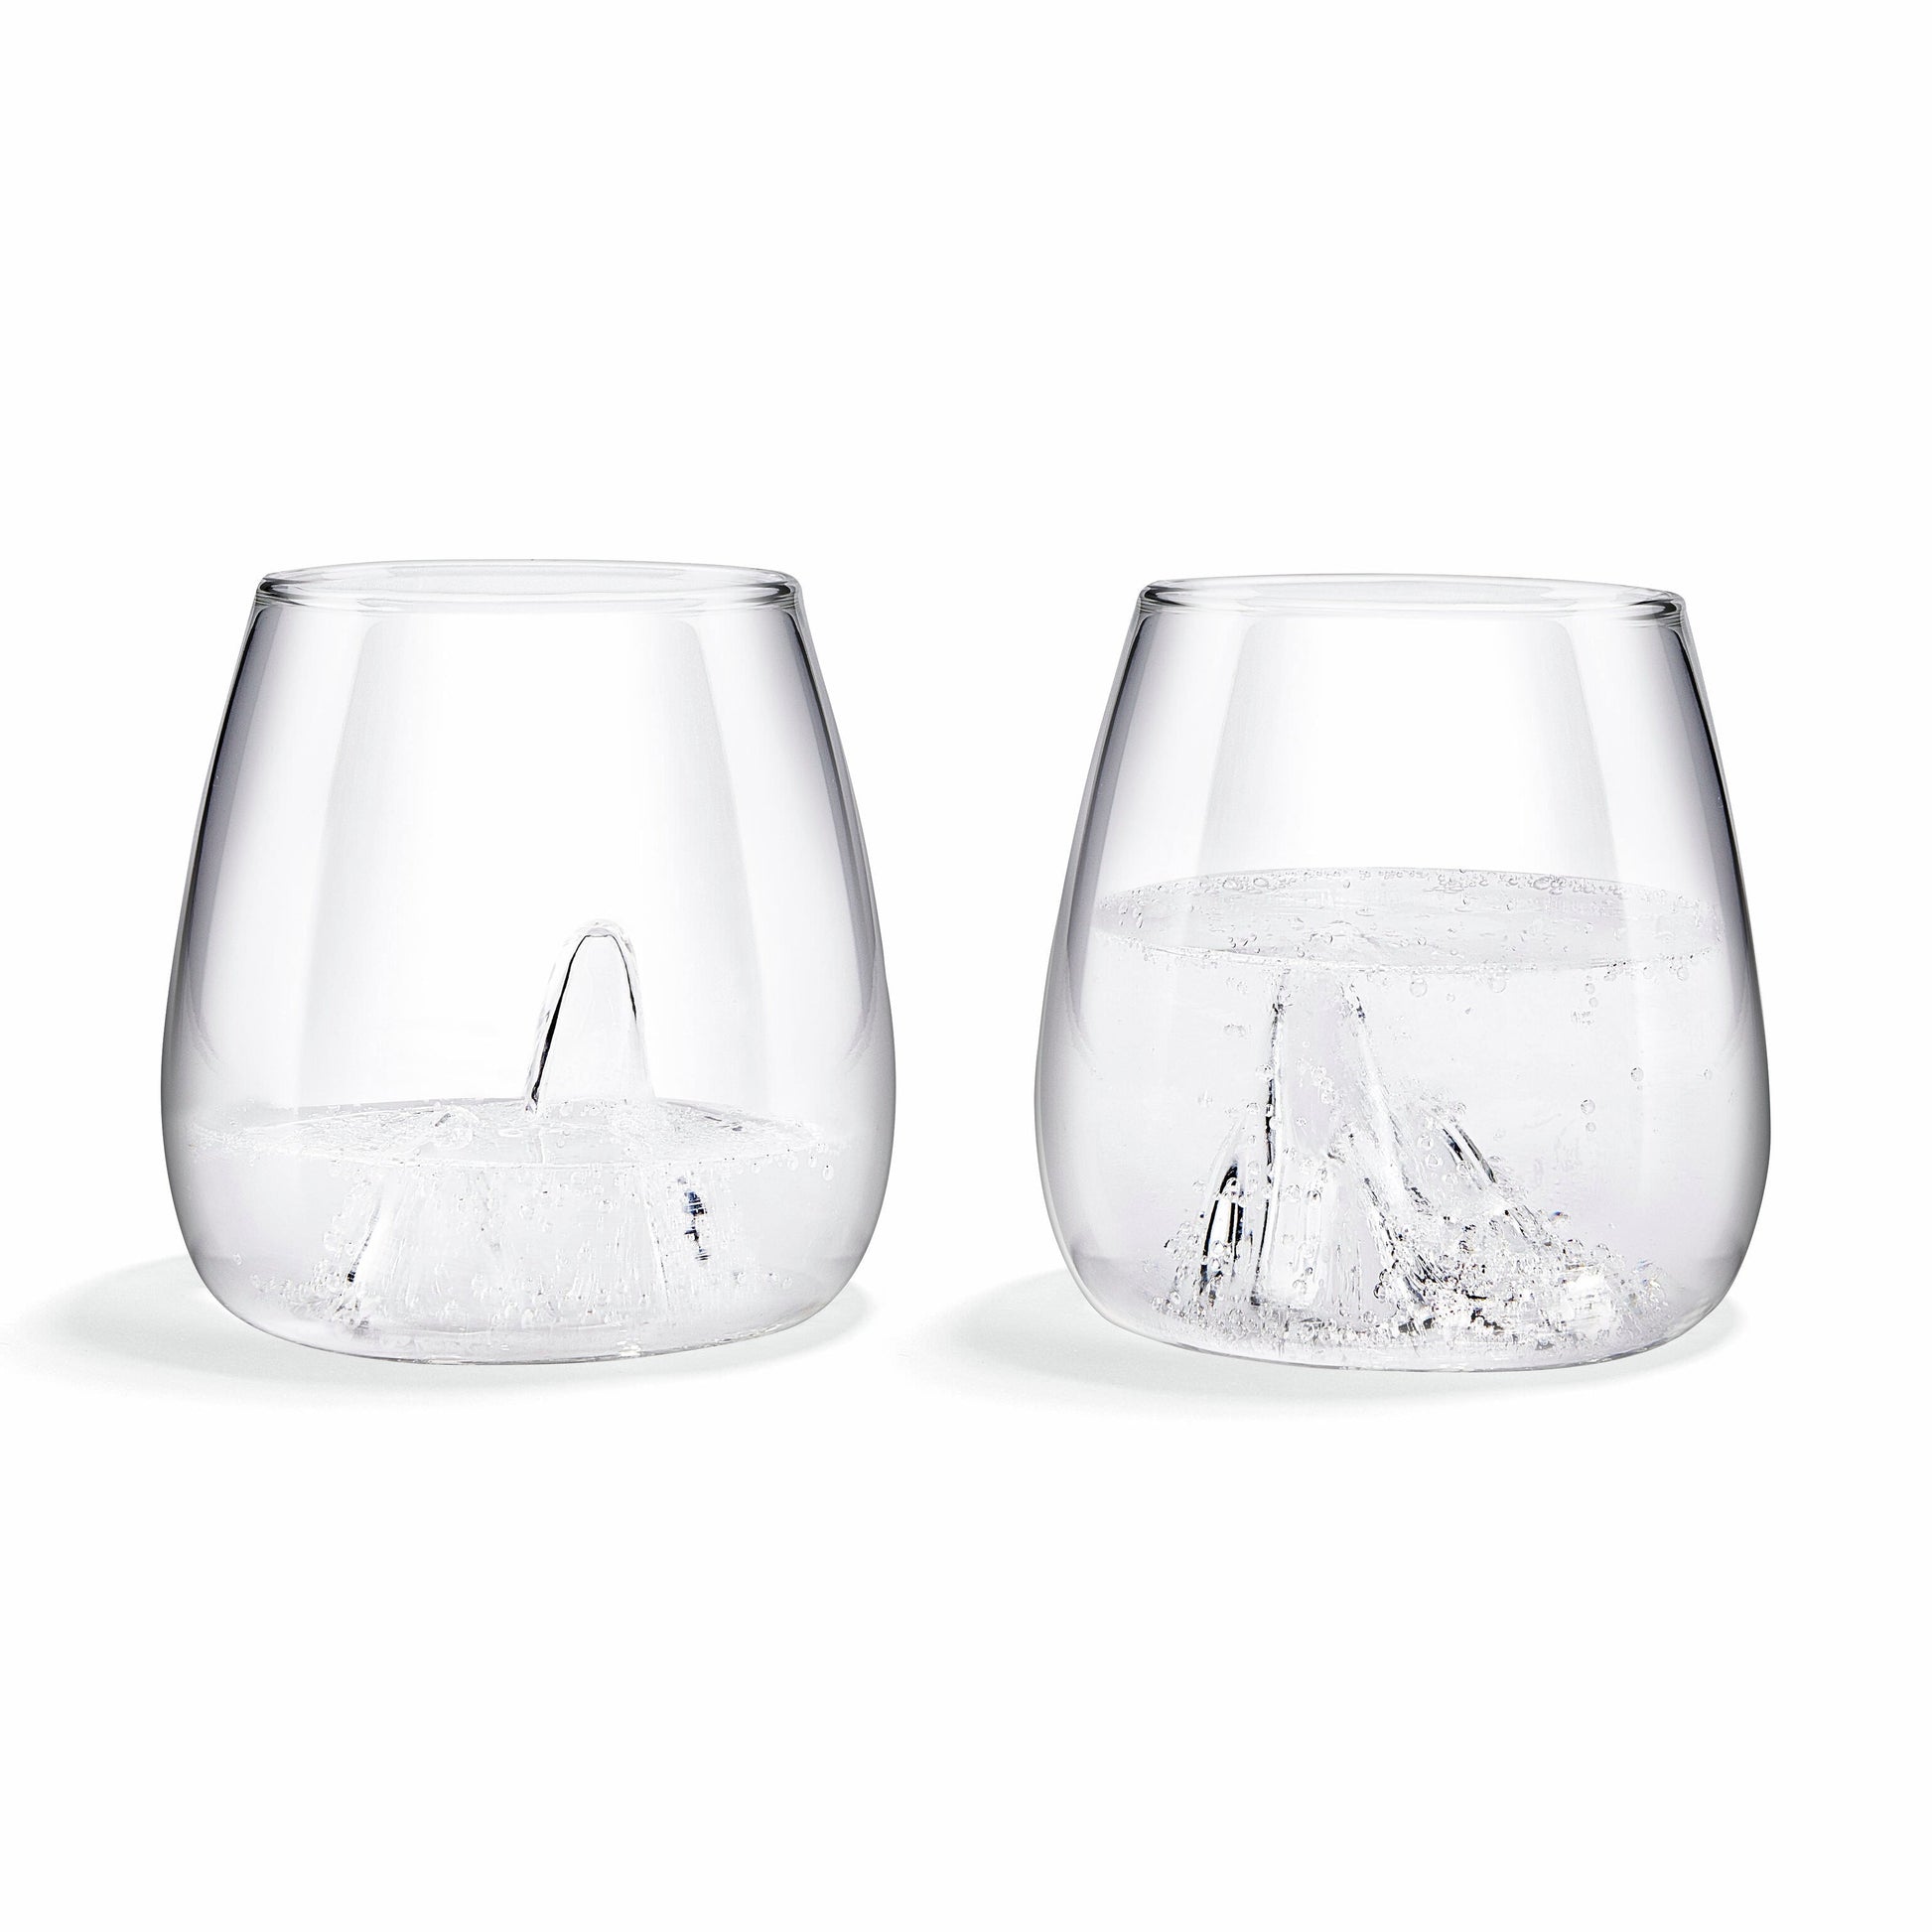 Glasscape Glassware - Tumblers Set of 2